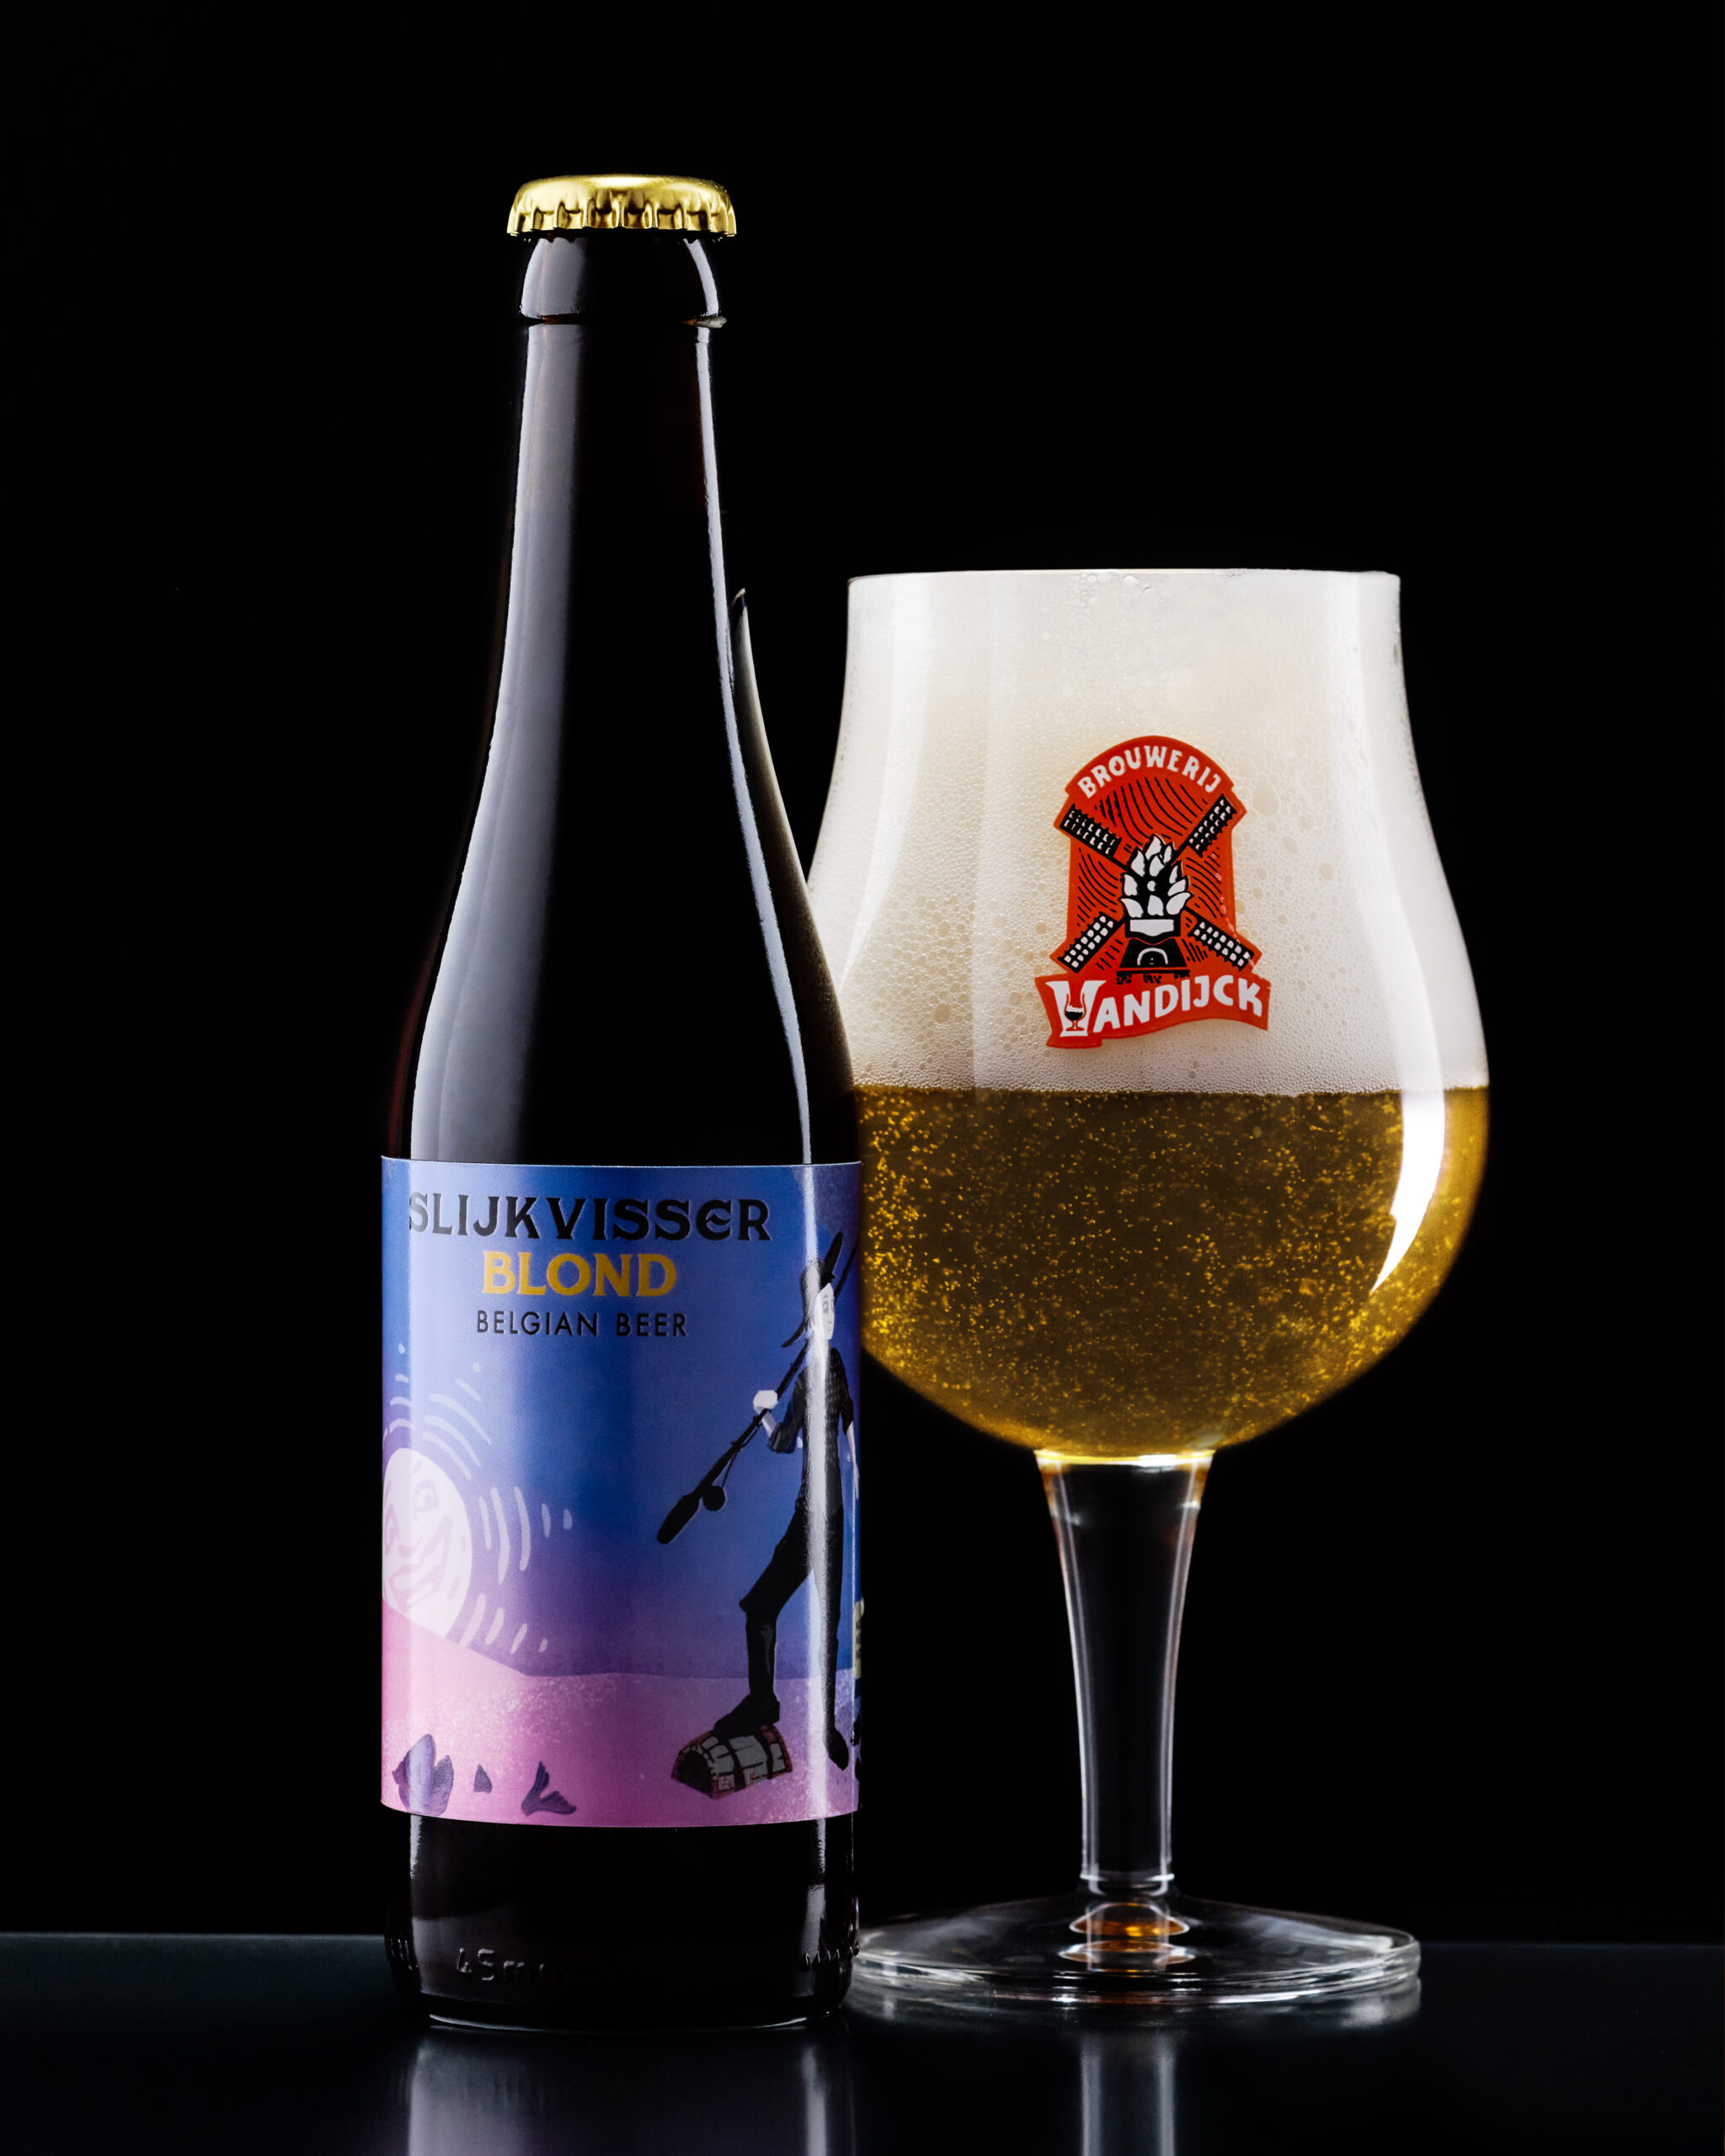 Brouwerij Vandijck – Slijkvisser